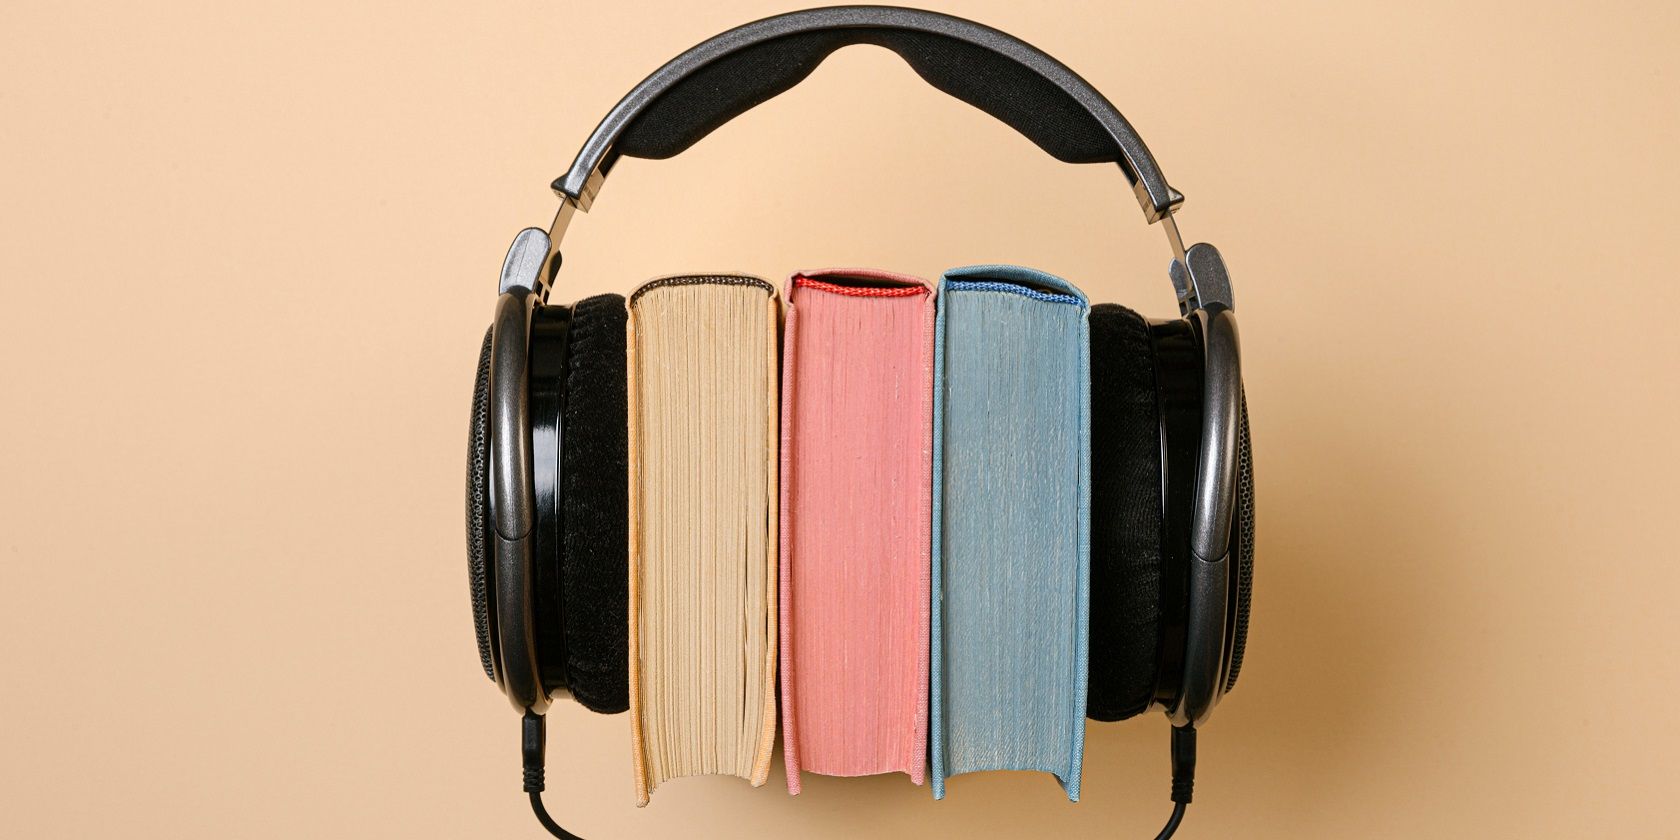 reading books vs audiobooks